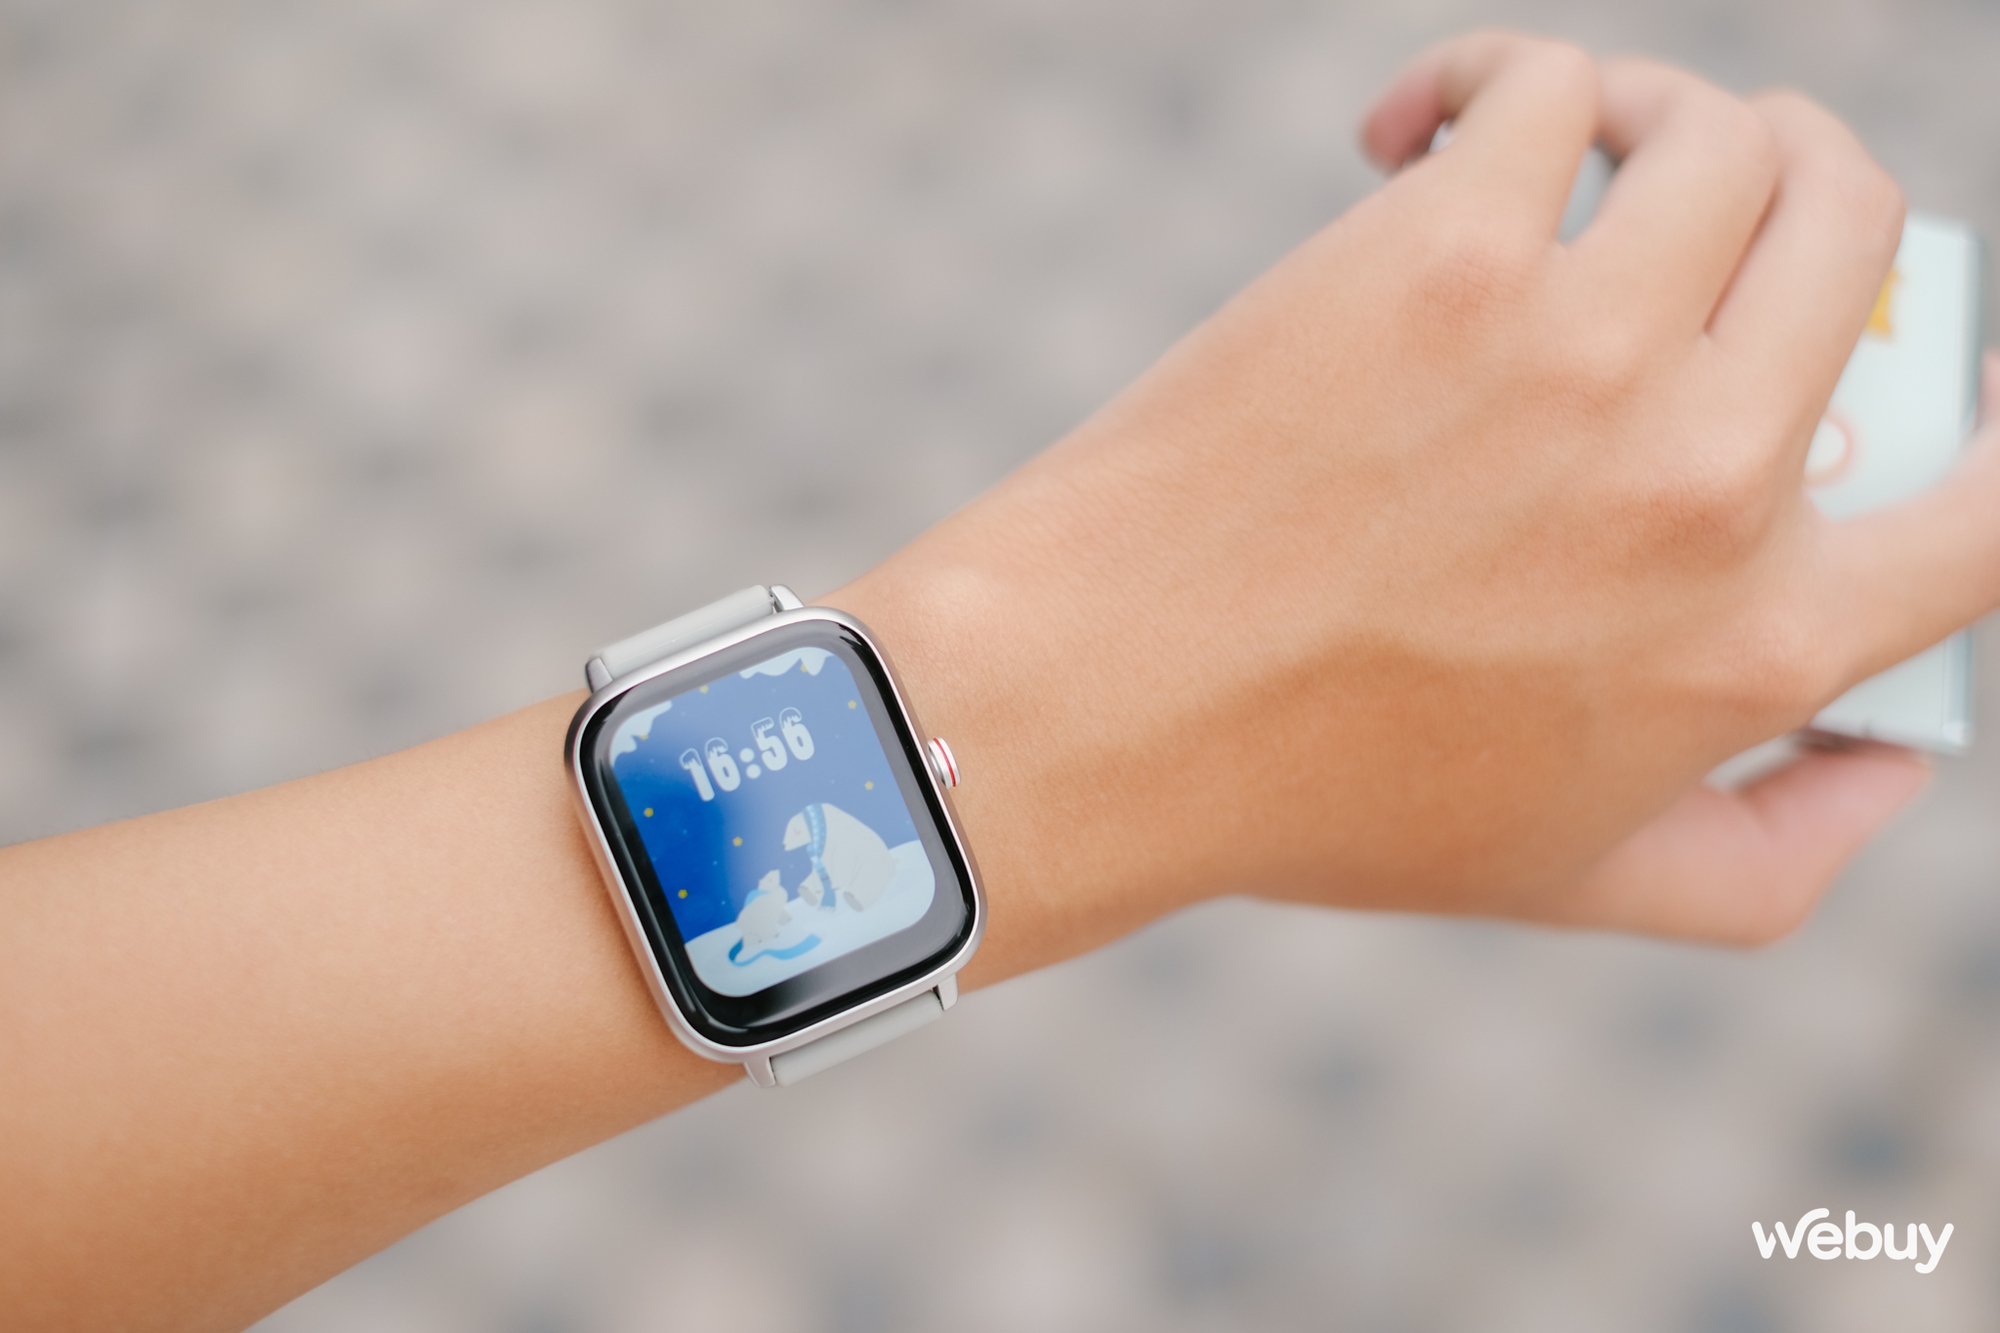 Smartwatch chính hãng giá 490.000 đồng: Thiết kế giống Apple Watch, khung viền nhôm, có loa/mic thoại, pin 7 ngày - Ảnh 8.